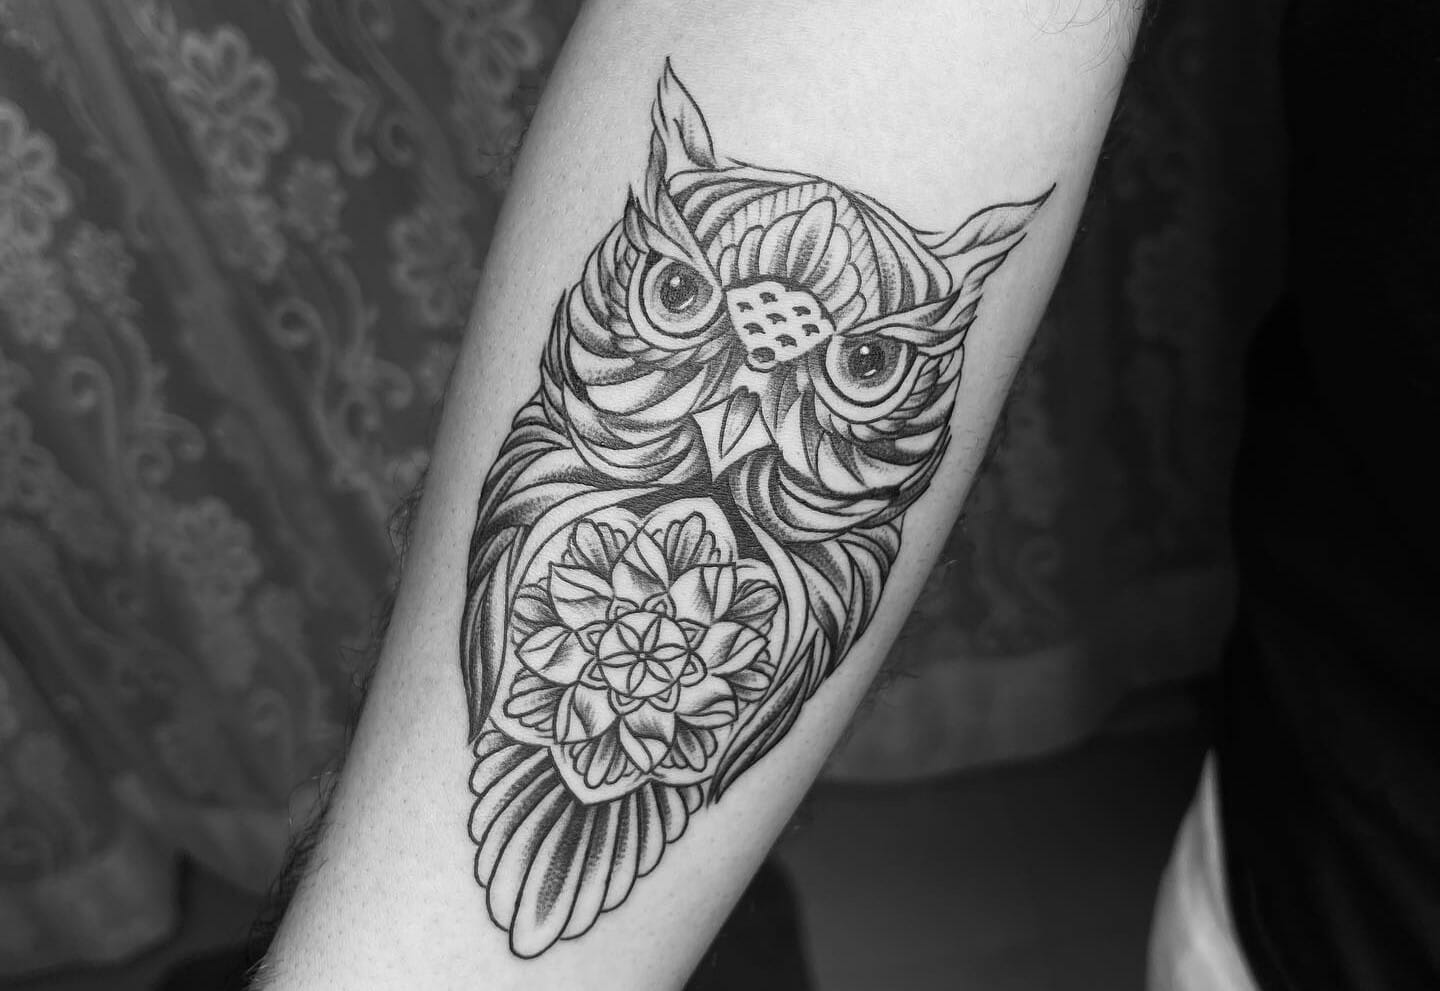 Cute Feminine Owl Tattoo Idea | Purple tattoos, Cute owl tattoo, Key tattoos